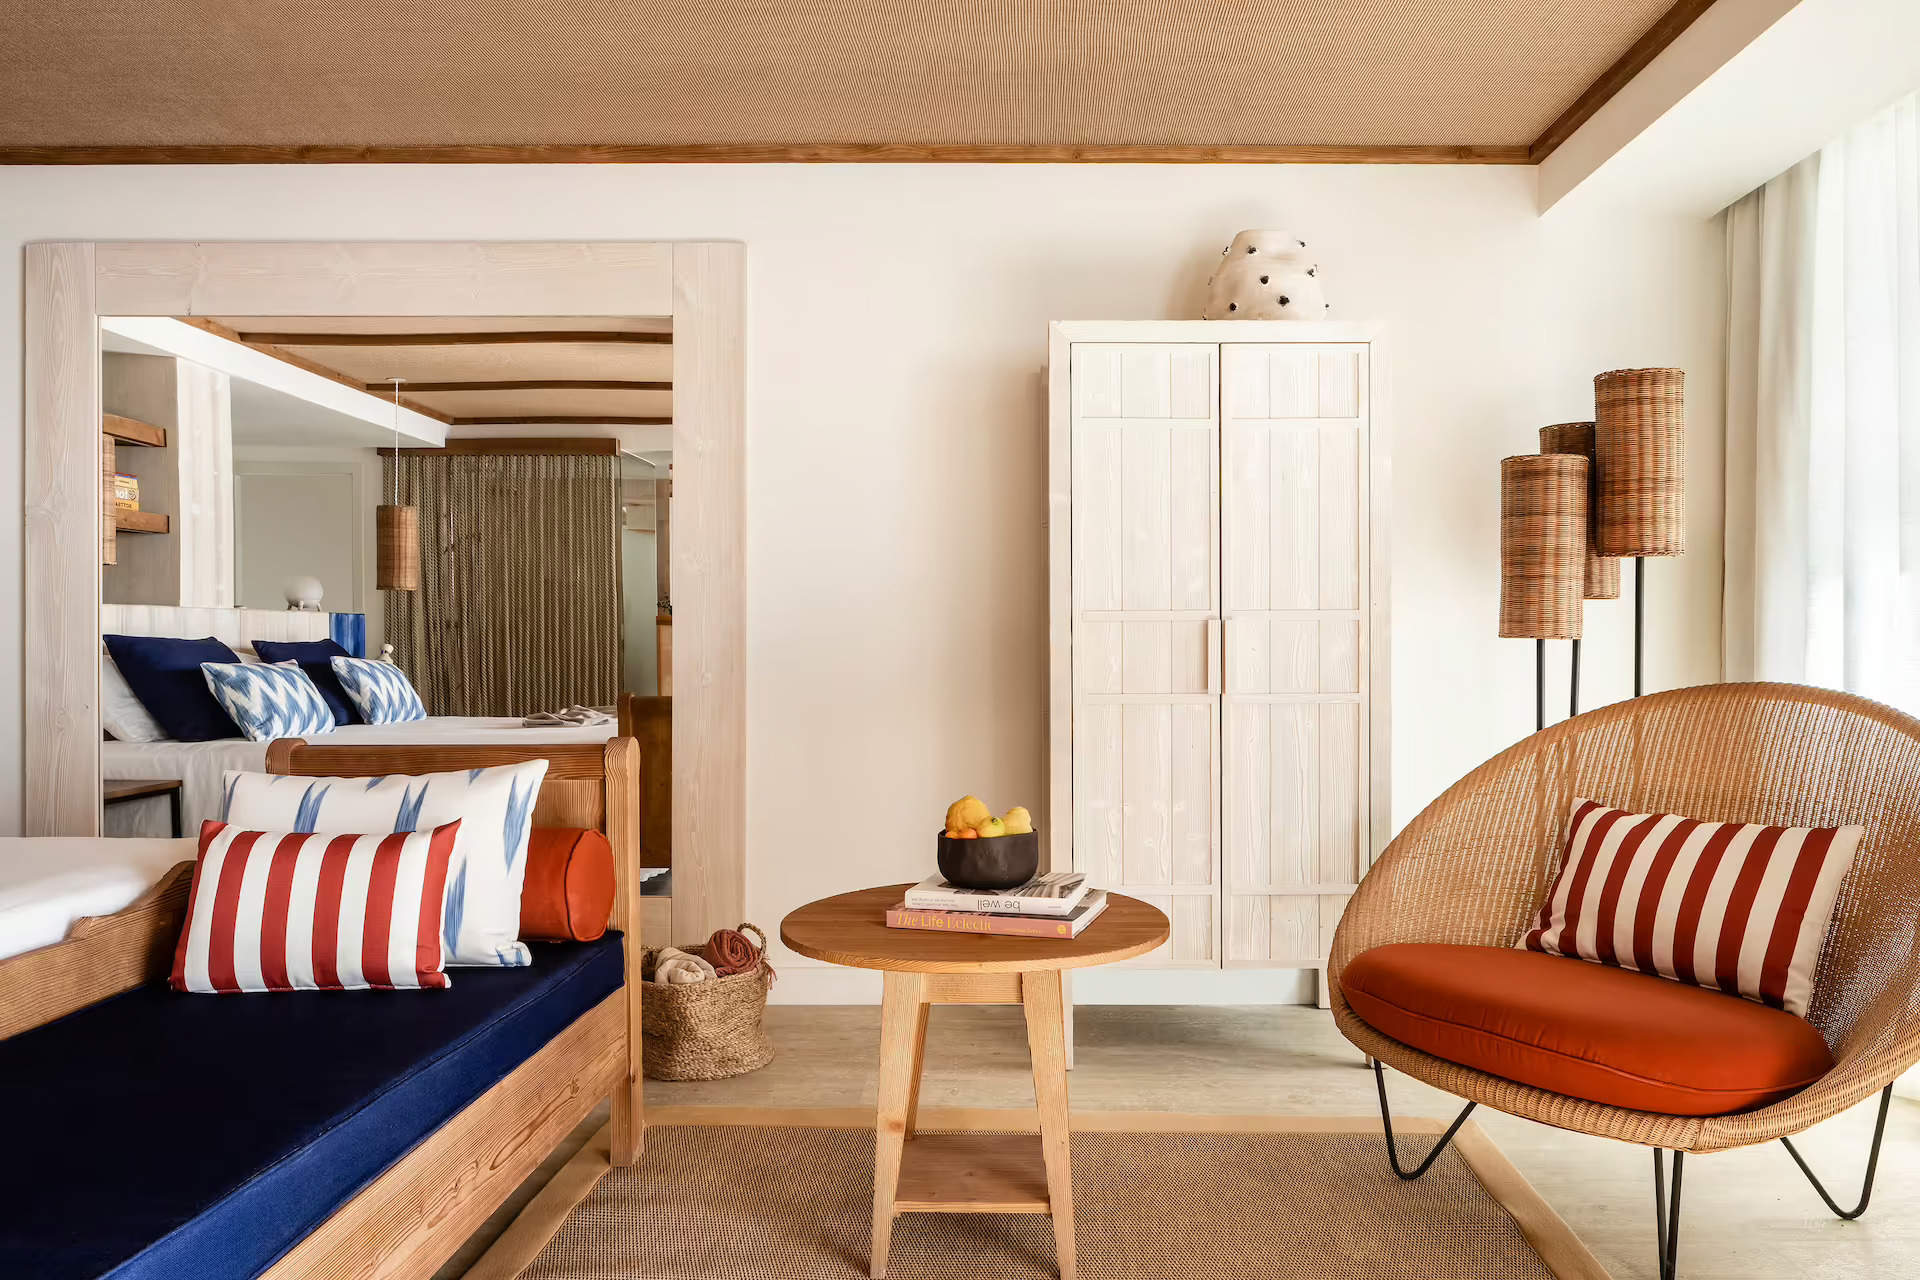 Muebles de madera con tapicerías en rojo, azul y blanco